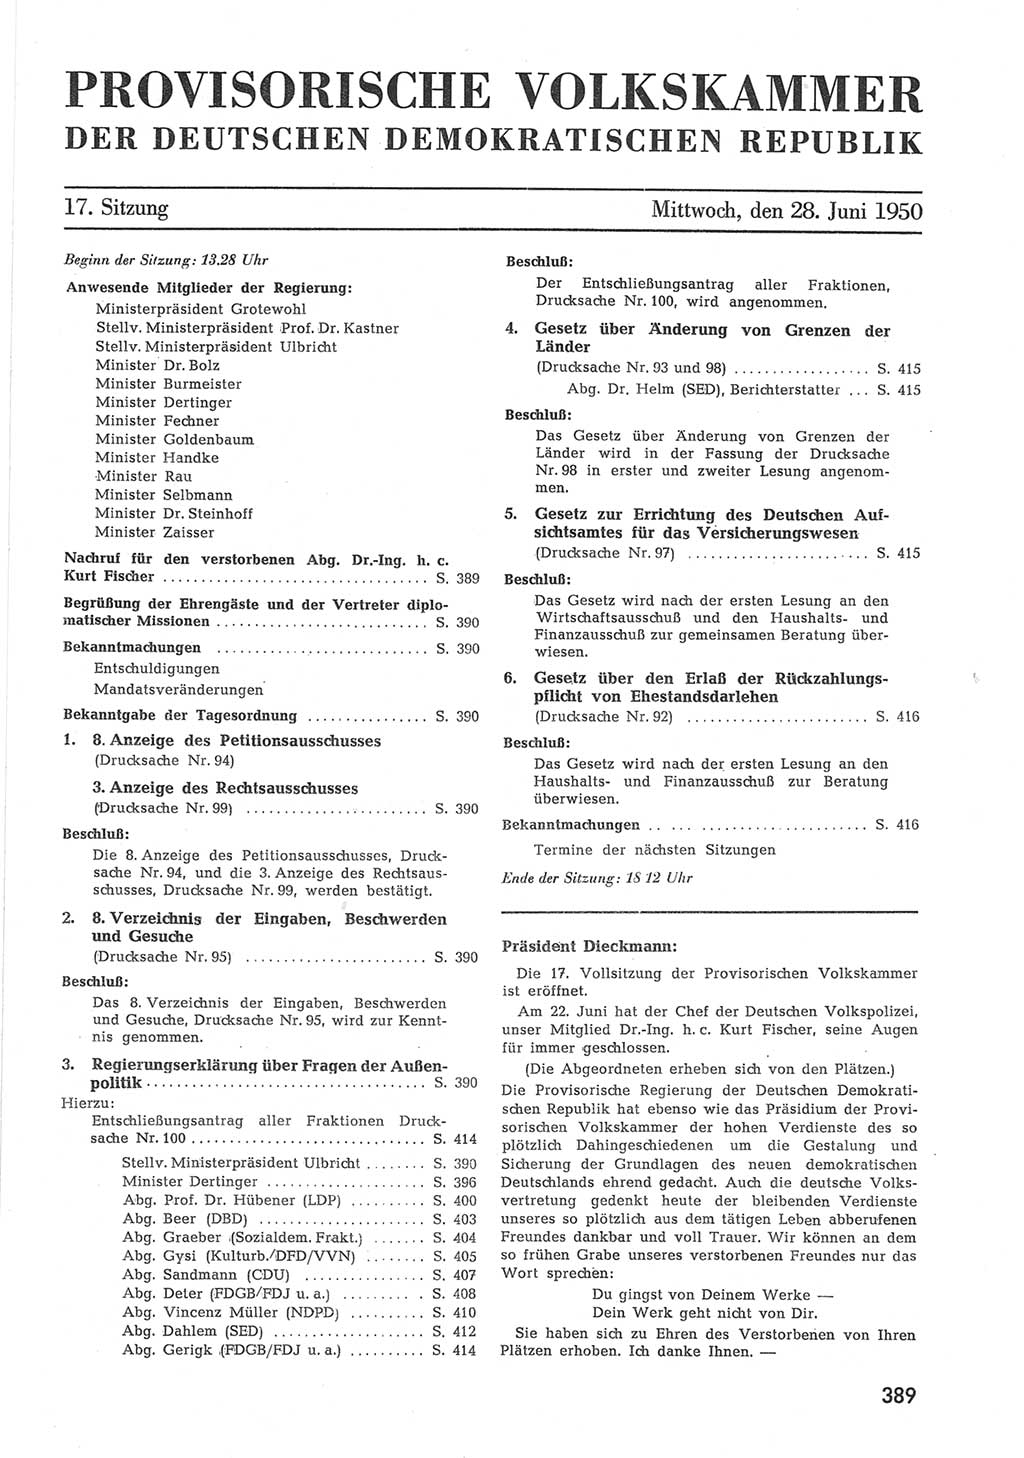 Provisorische Volkskammer (VK) der Deutschen Demokratischen Republik (DDR) 1949-1950, Dokument 407 (Prov. VK DDR 1949-1950, Dok. 407)